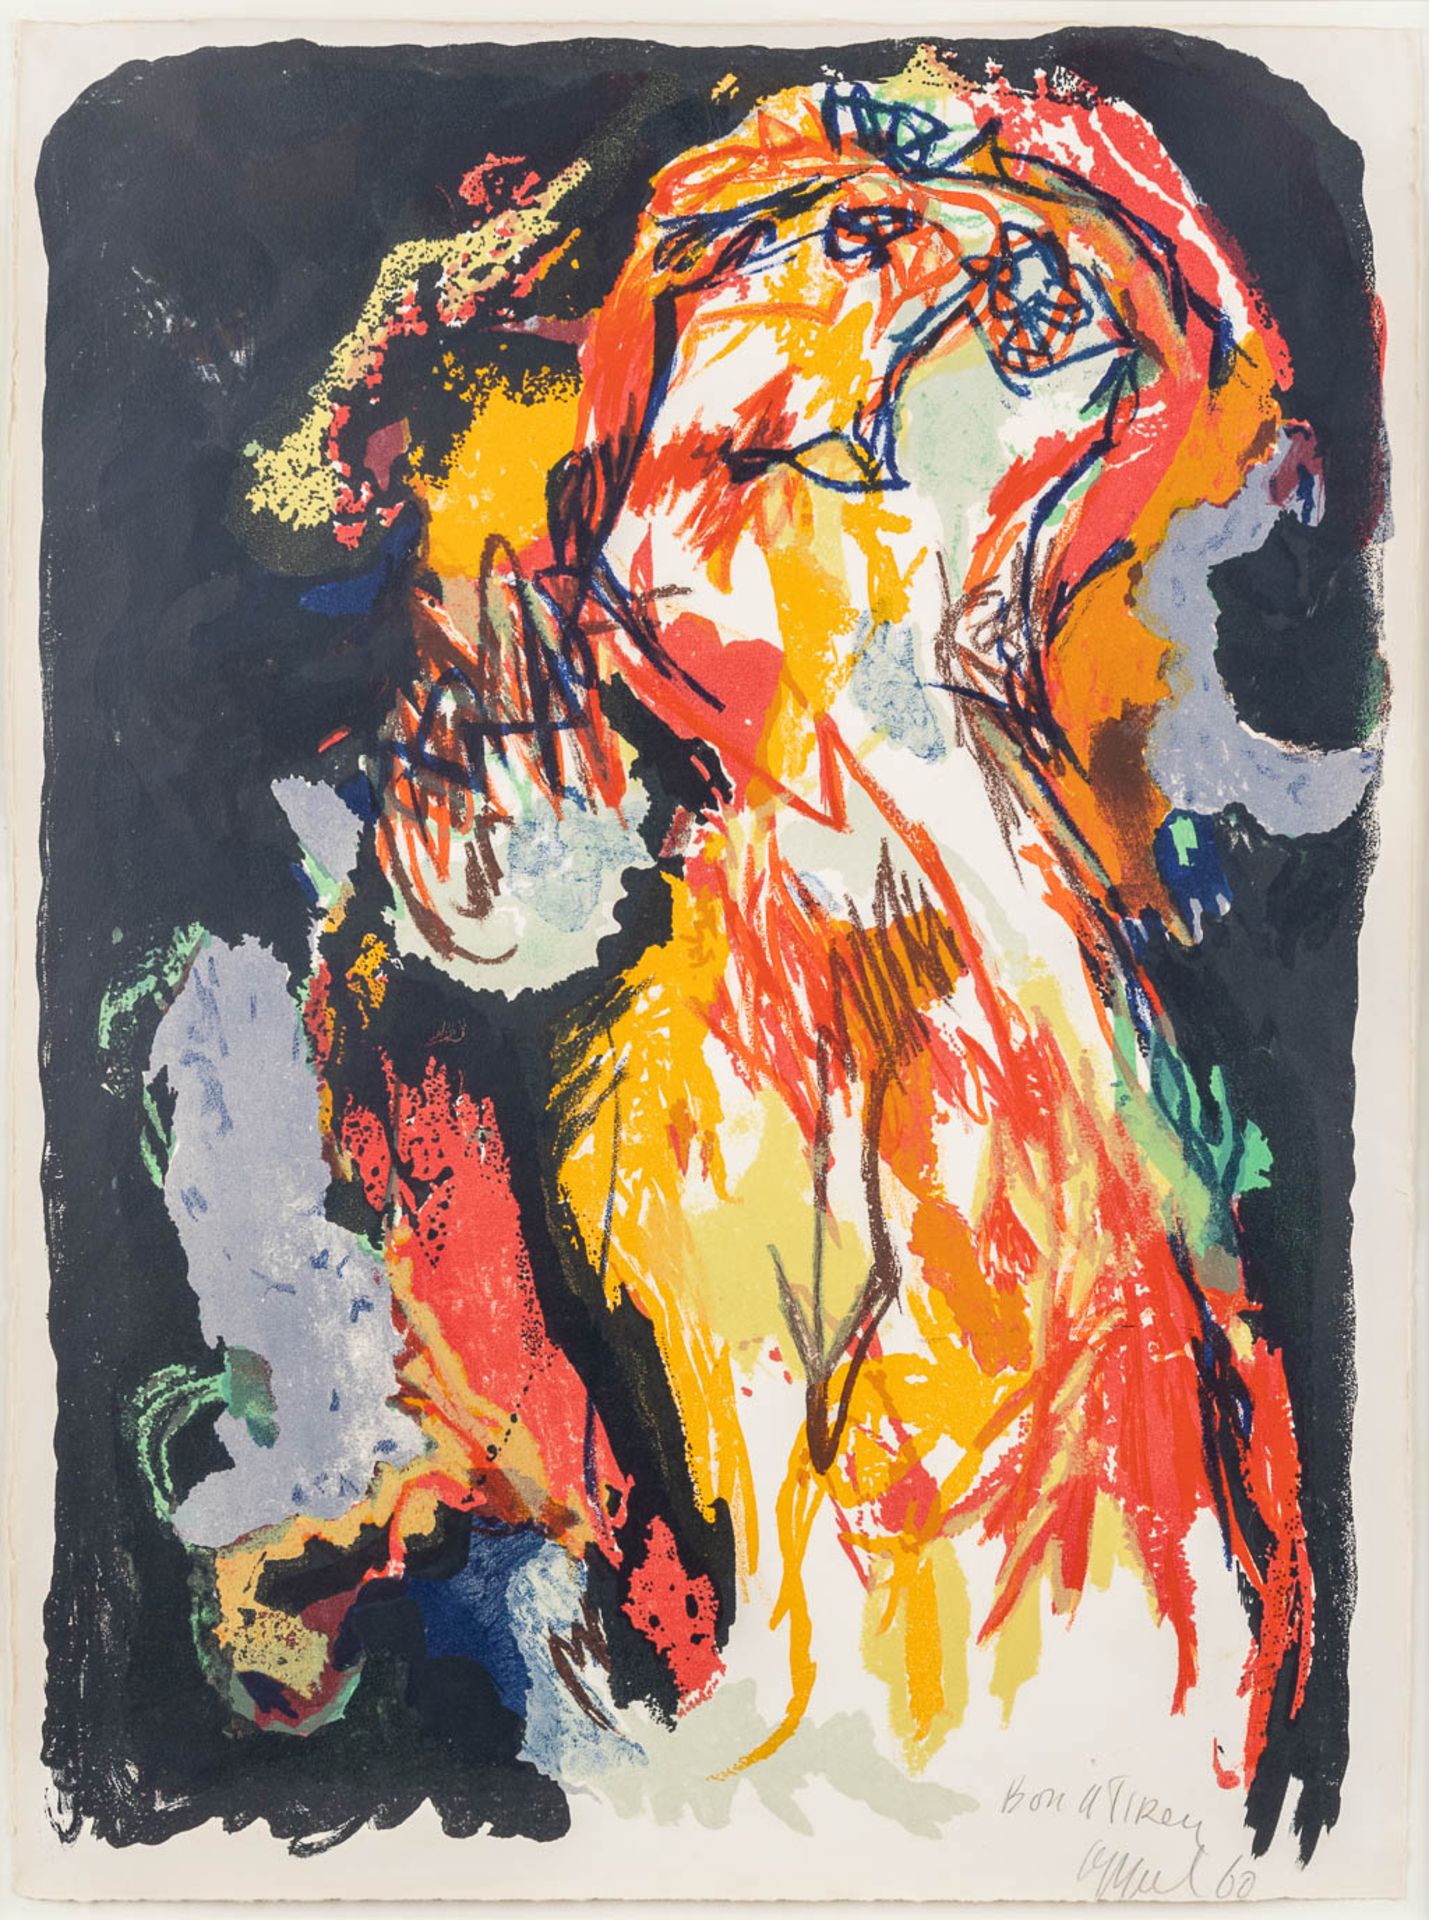 Karel APPEL (1921-2006) 'Femme' a lithograph. 1960. (W: 55 x H: 75 cm)